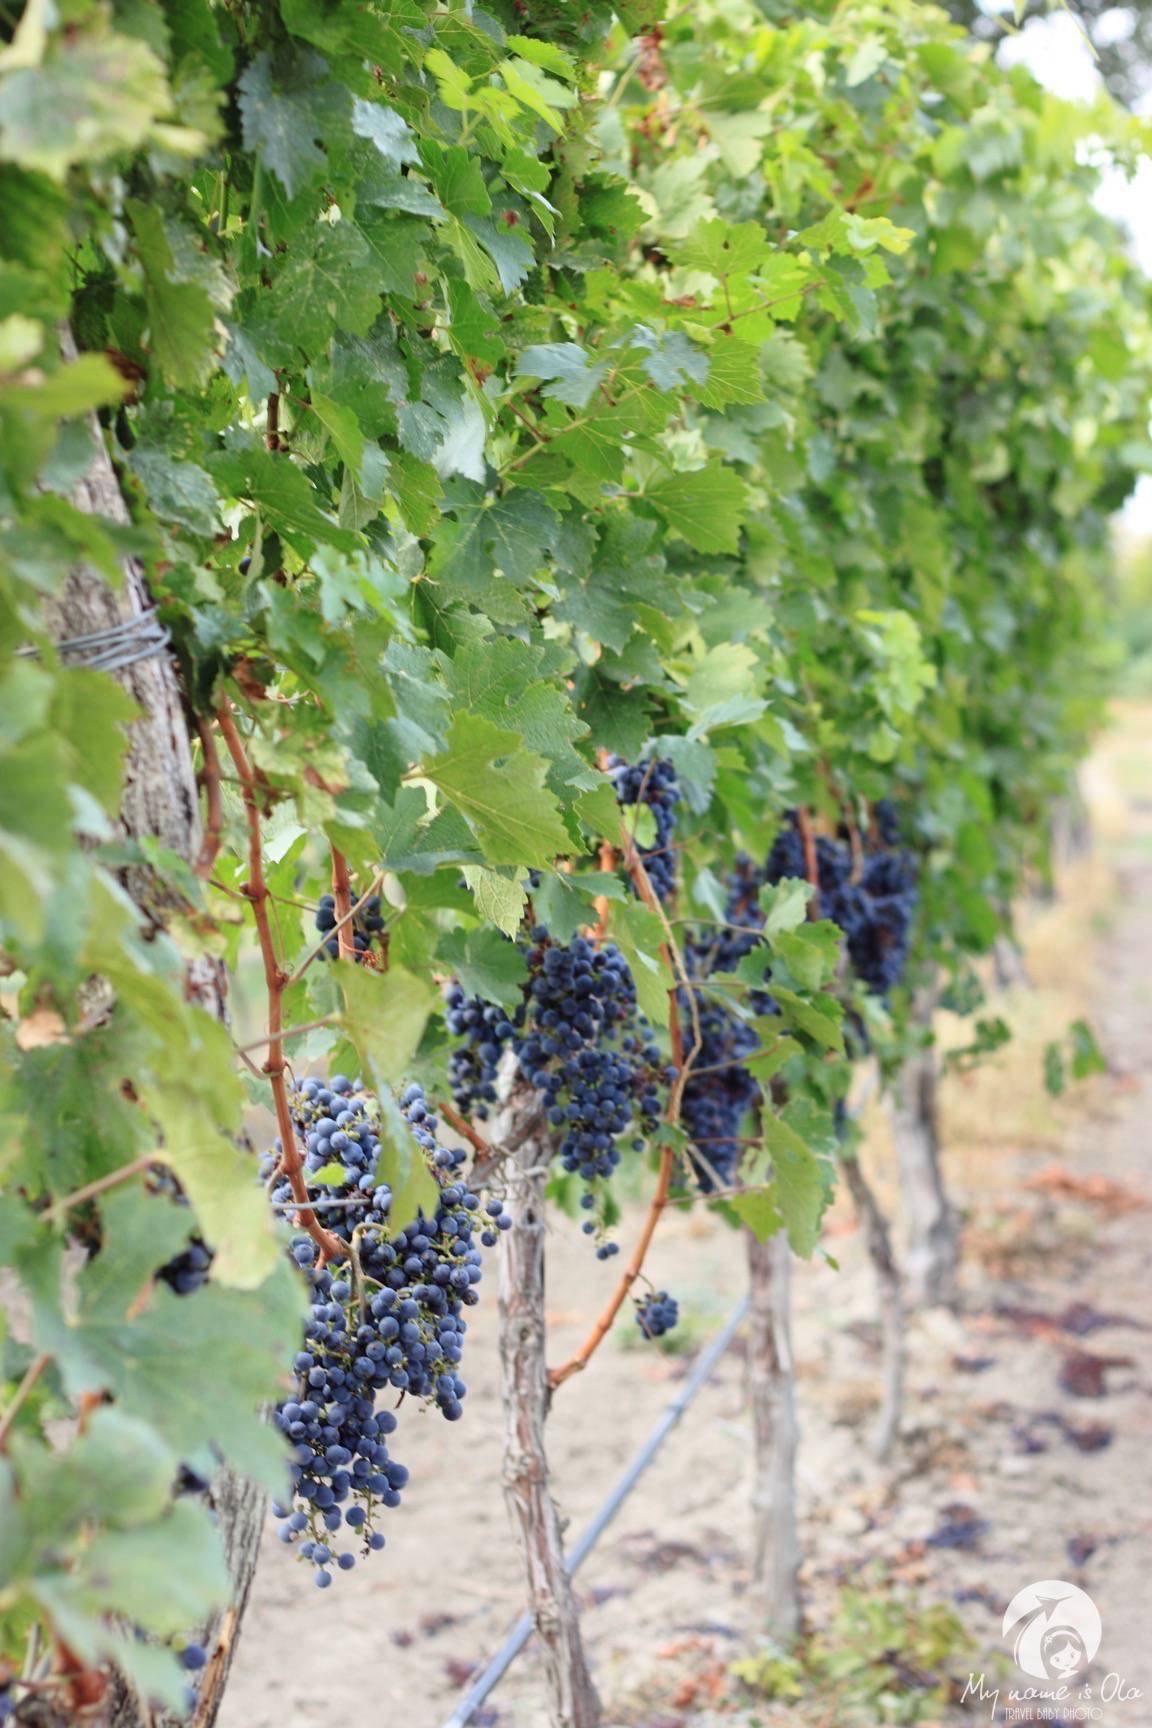 Georgian grapes